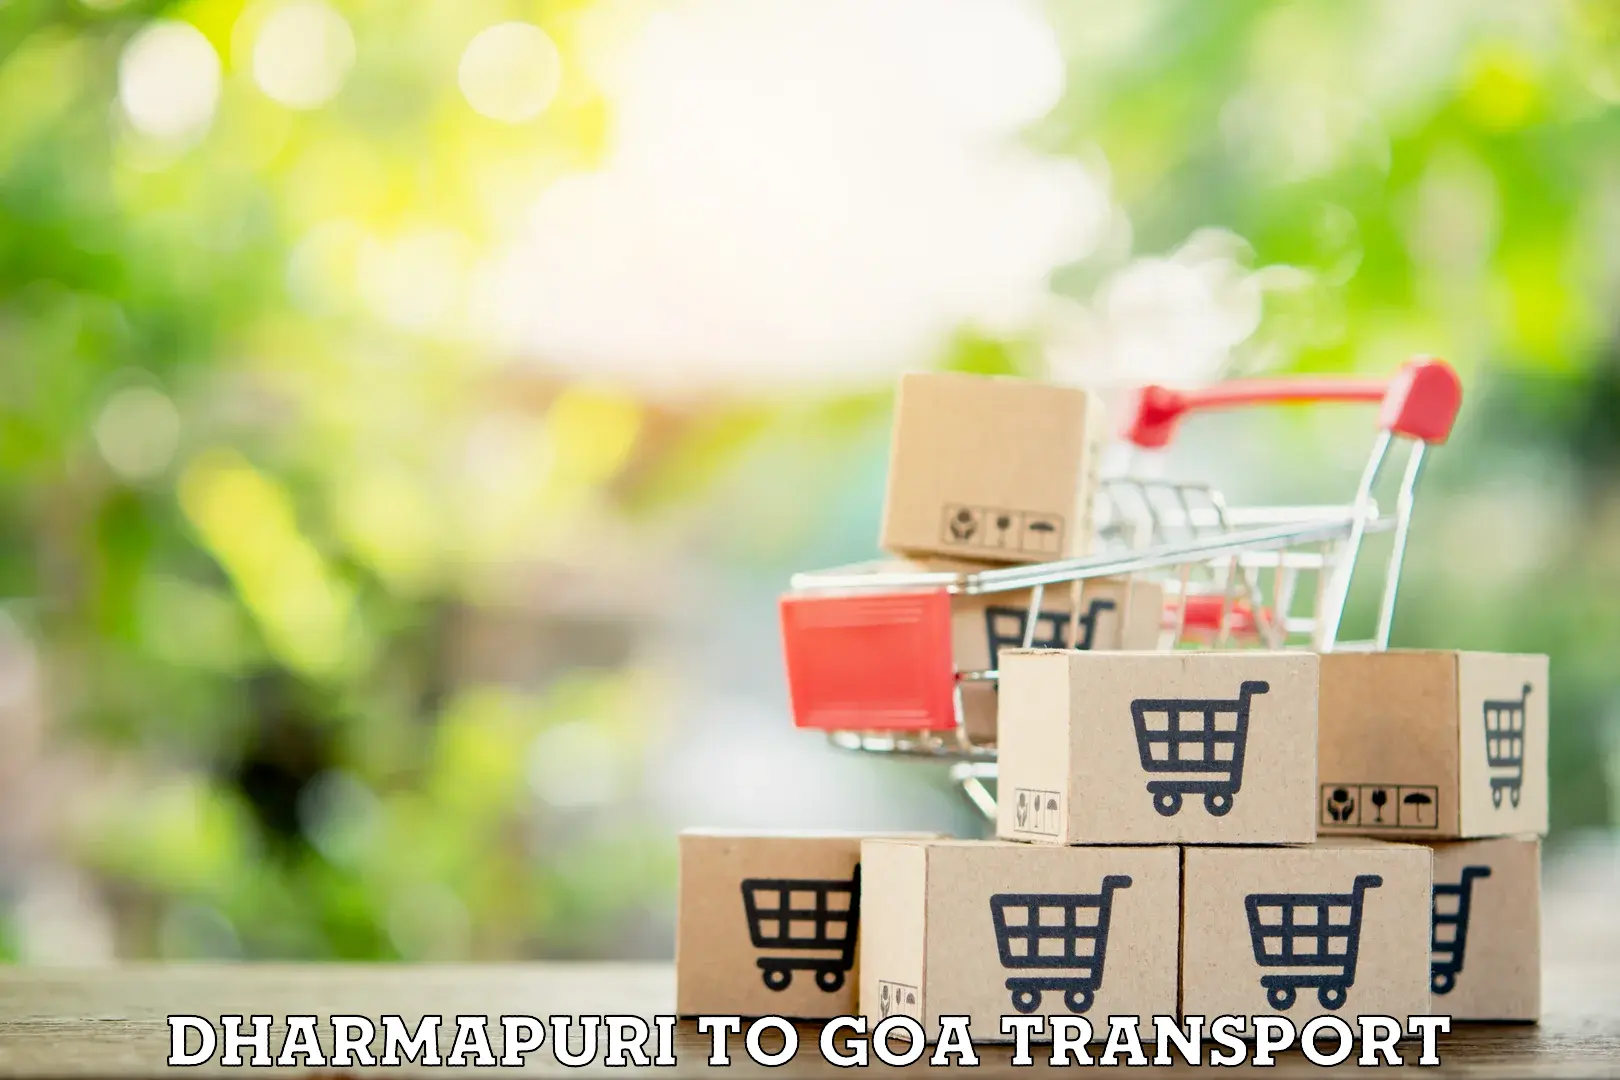 Goods delivery service Dharmapuri to IIT Goa